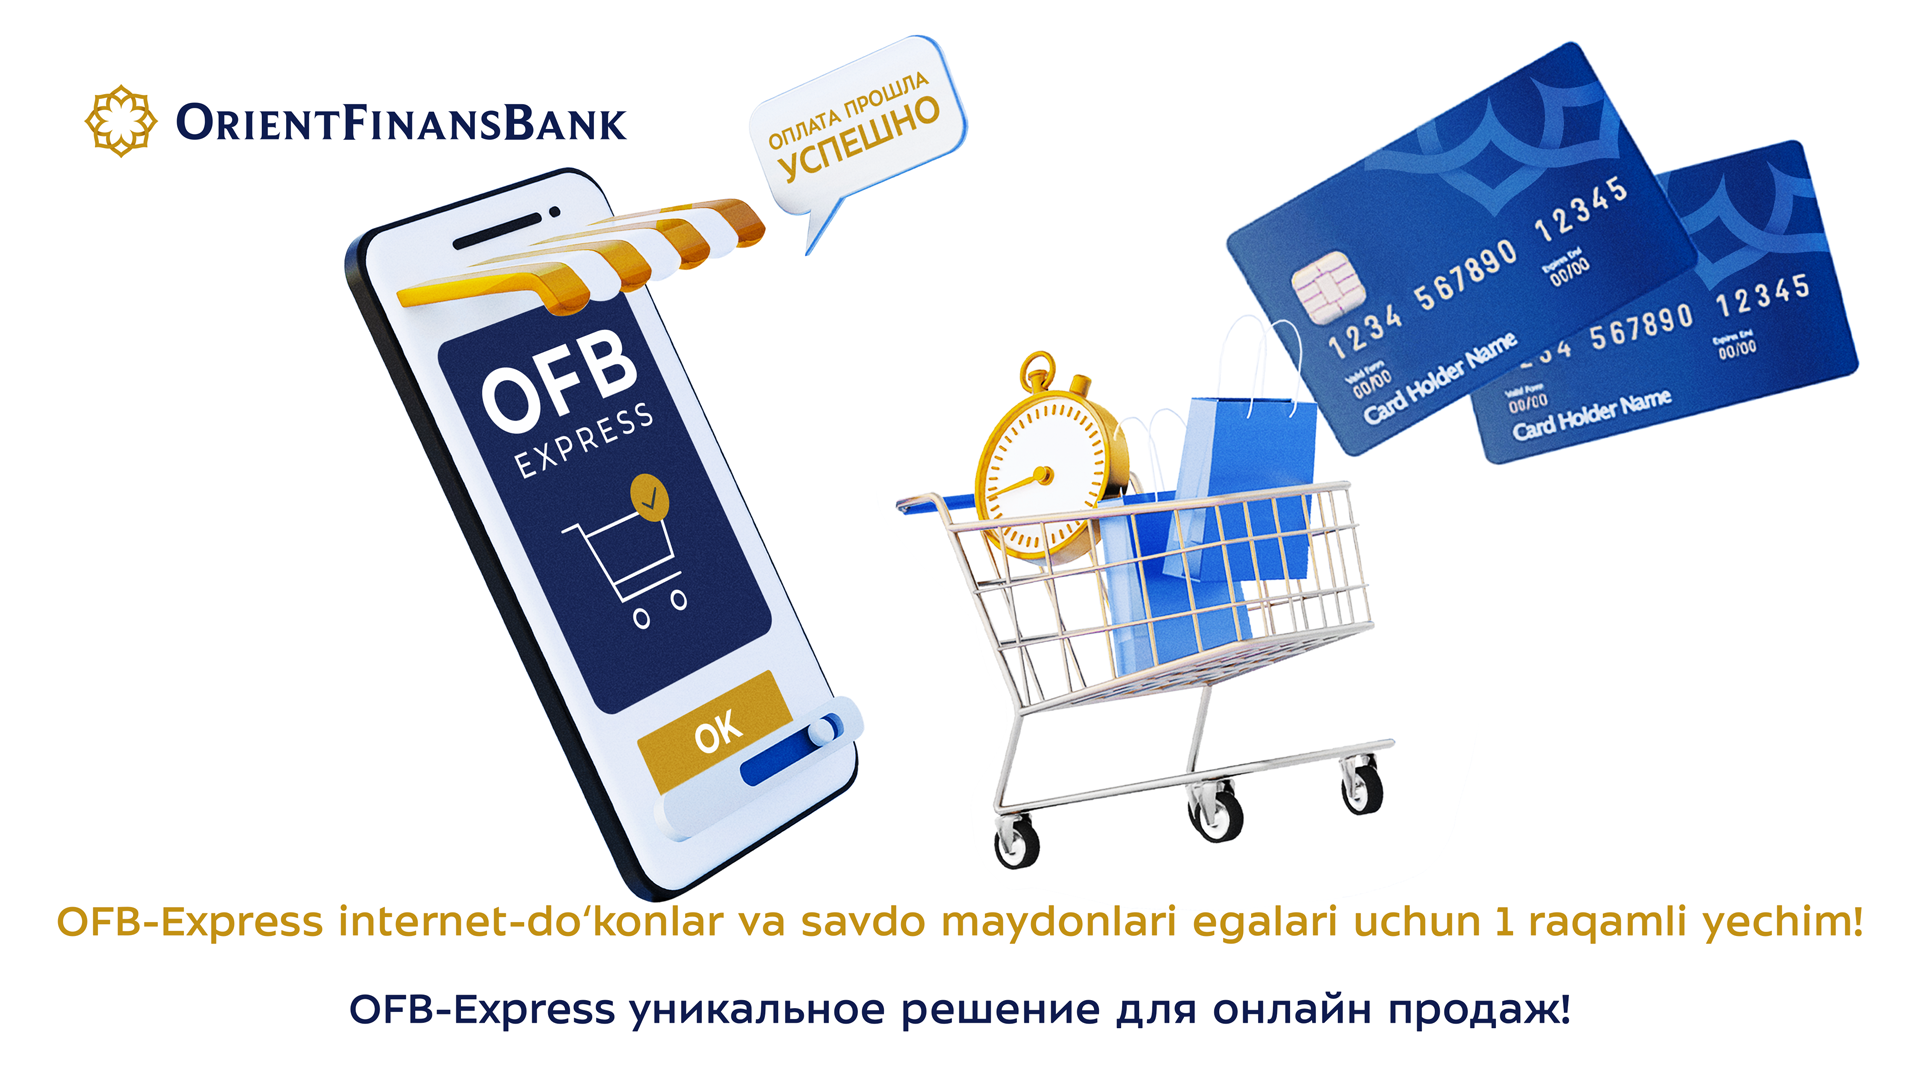 Orient Finans Bank представил уникальное решение для онлайн-продаж